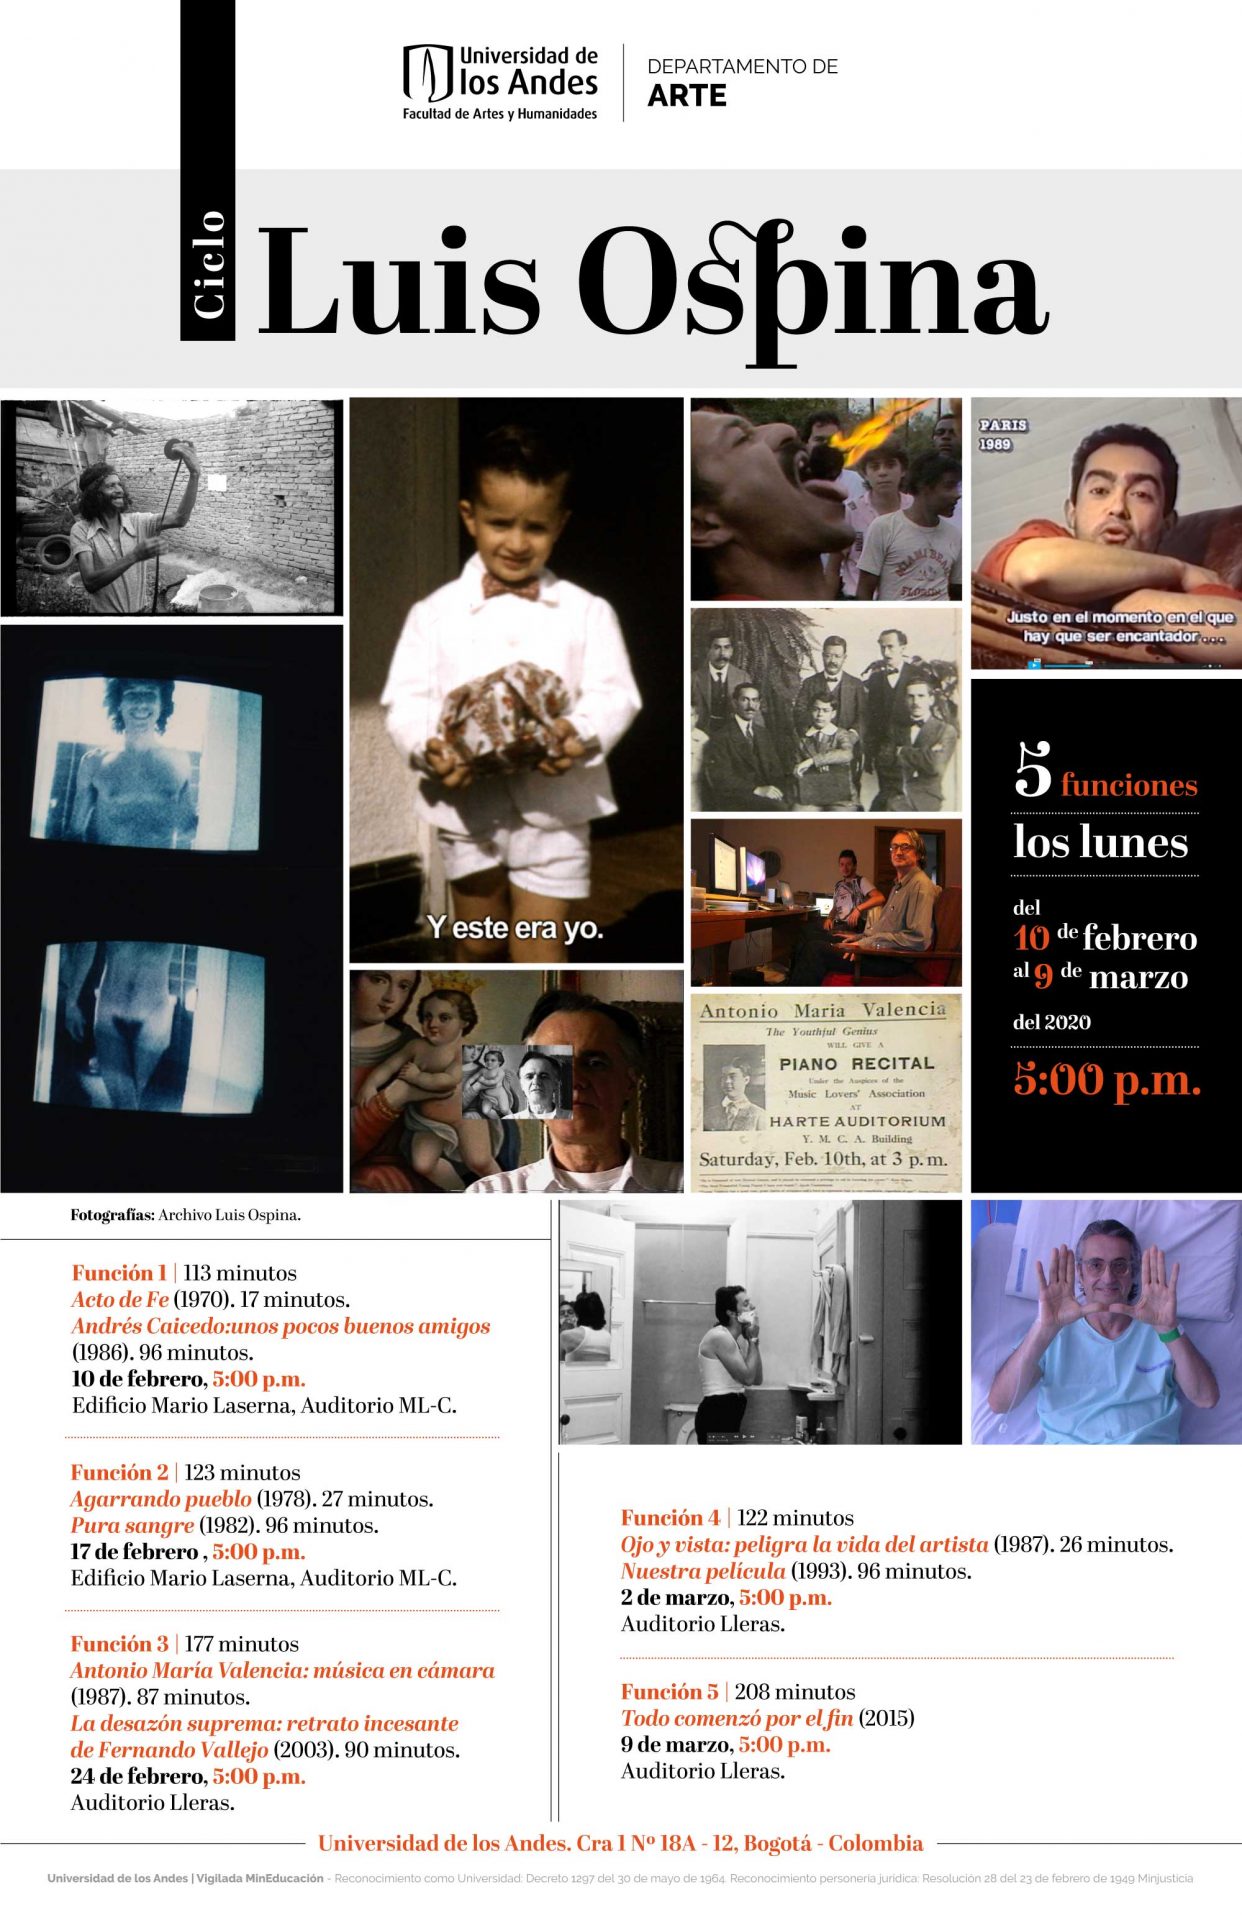 Cinco funciones dedicadas al trabajo cinematográfico de Luis Ospina desarrollado lo largo de cinco décadas.